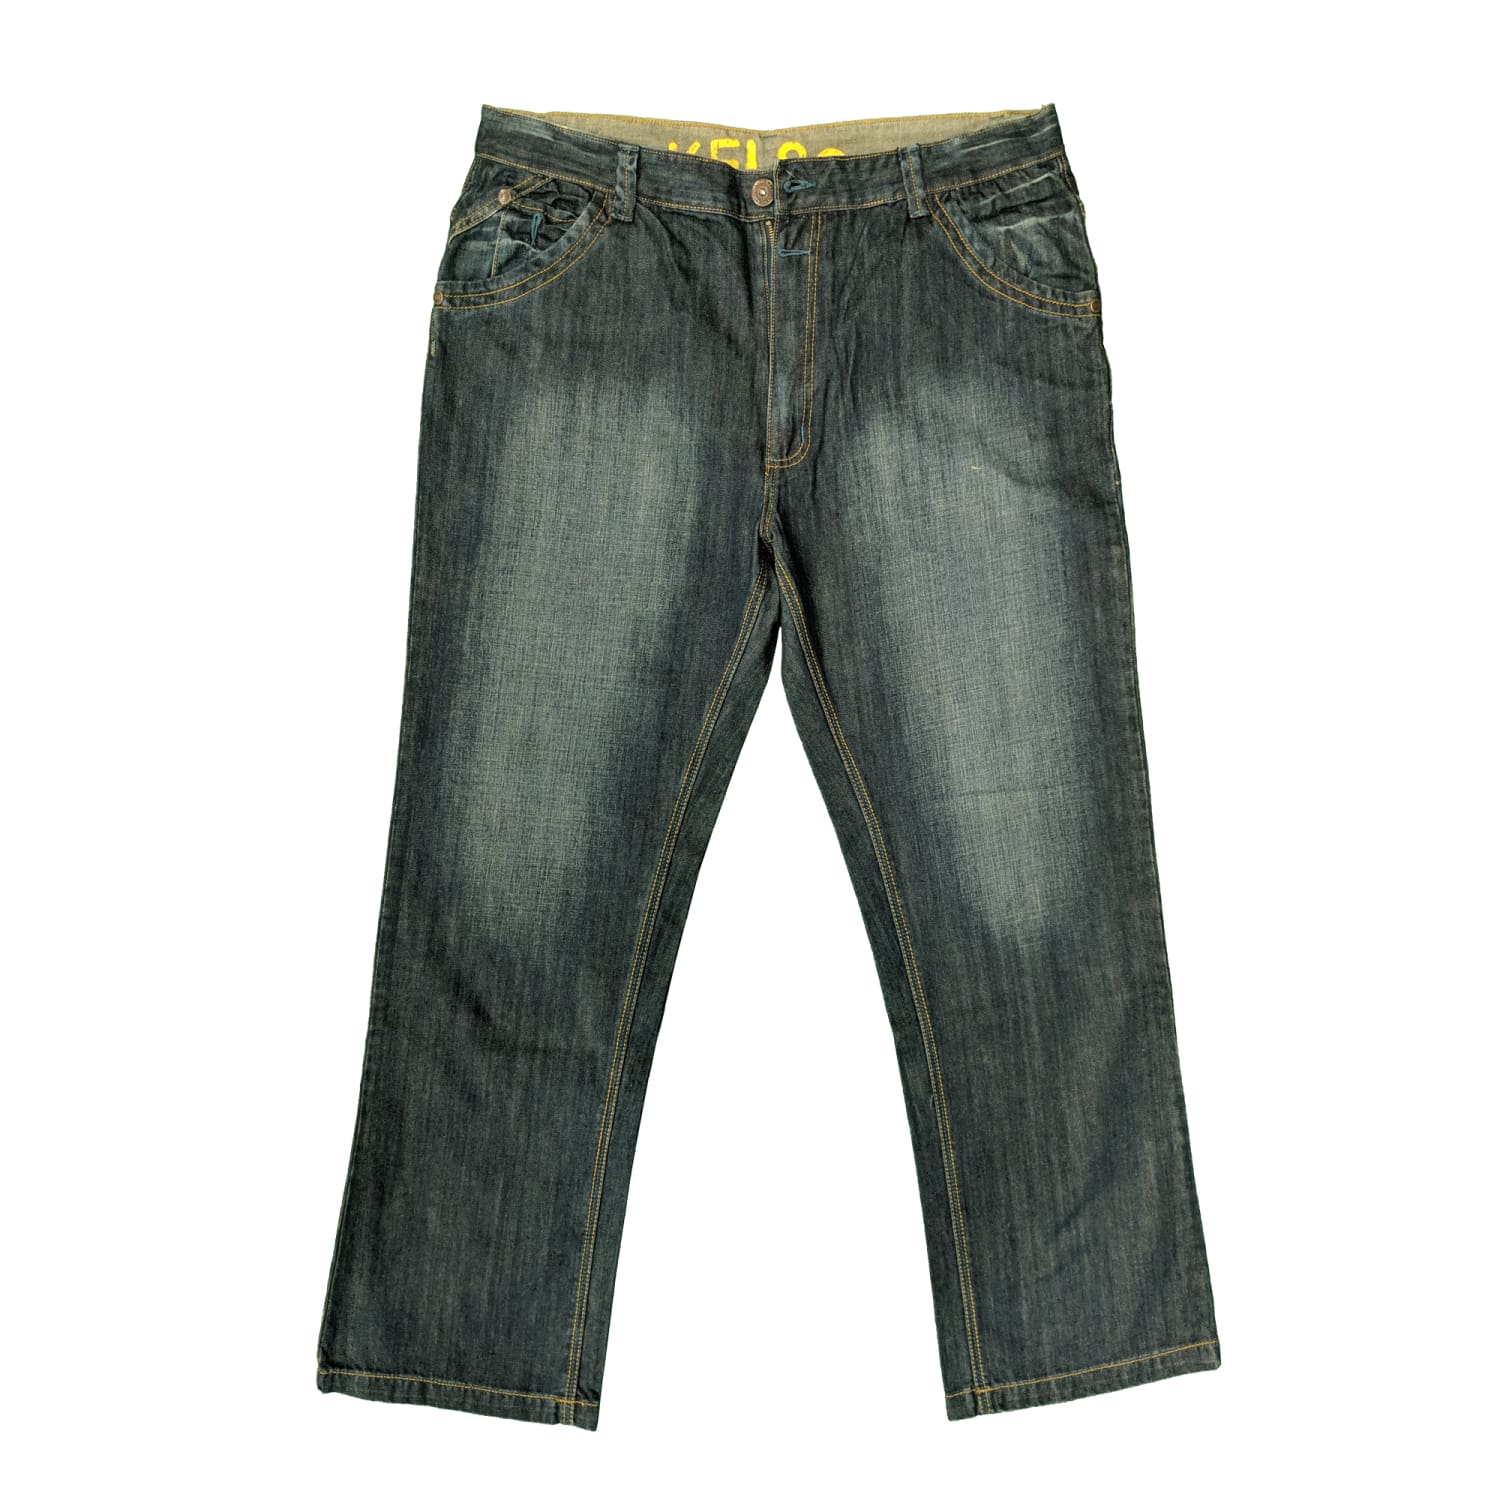 Nickelson Jeans - NMT505 - Marrakech - Dark Wash 1